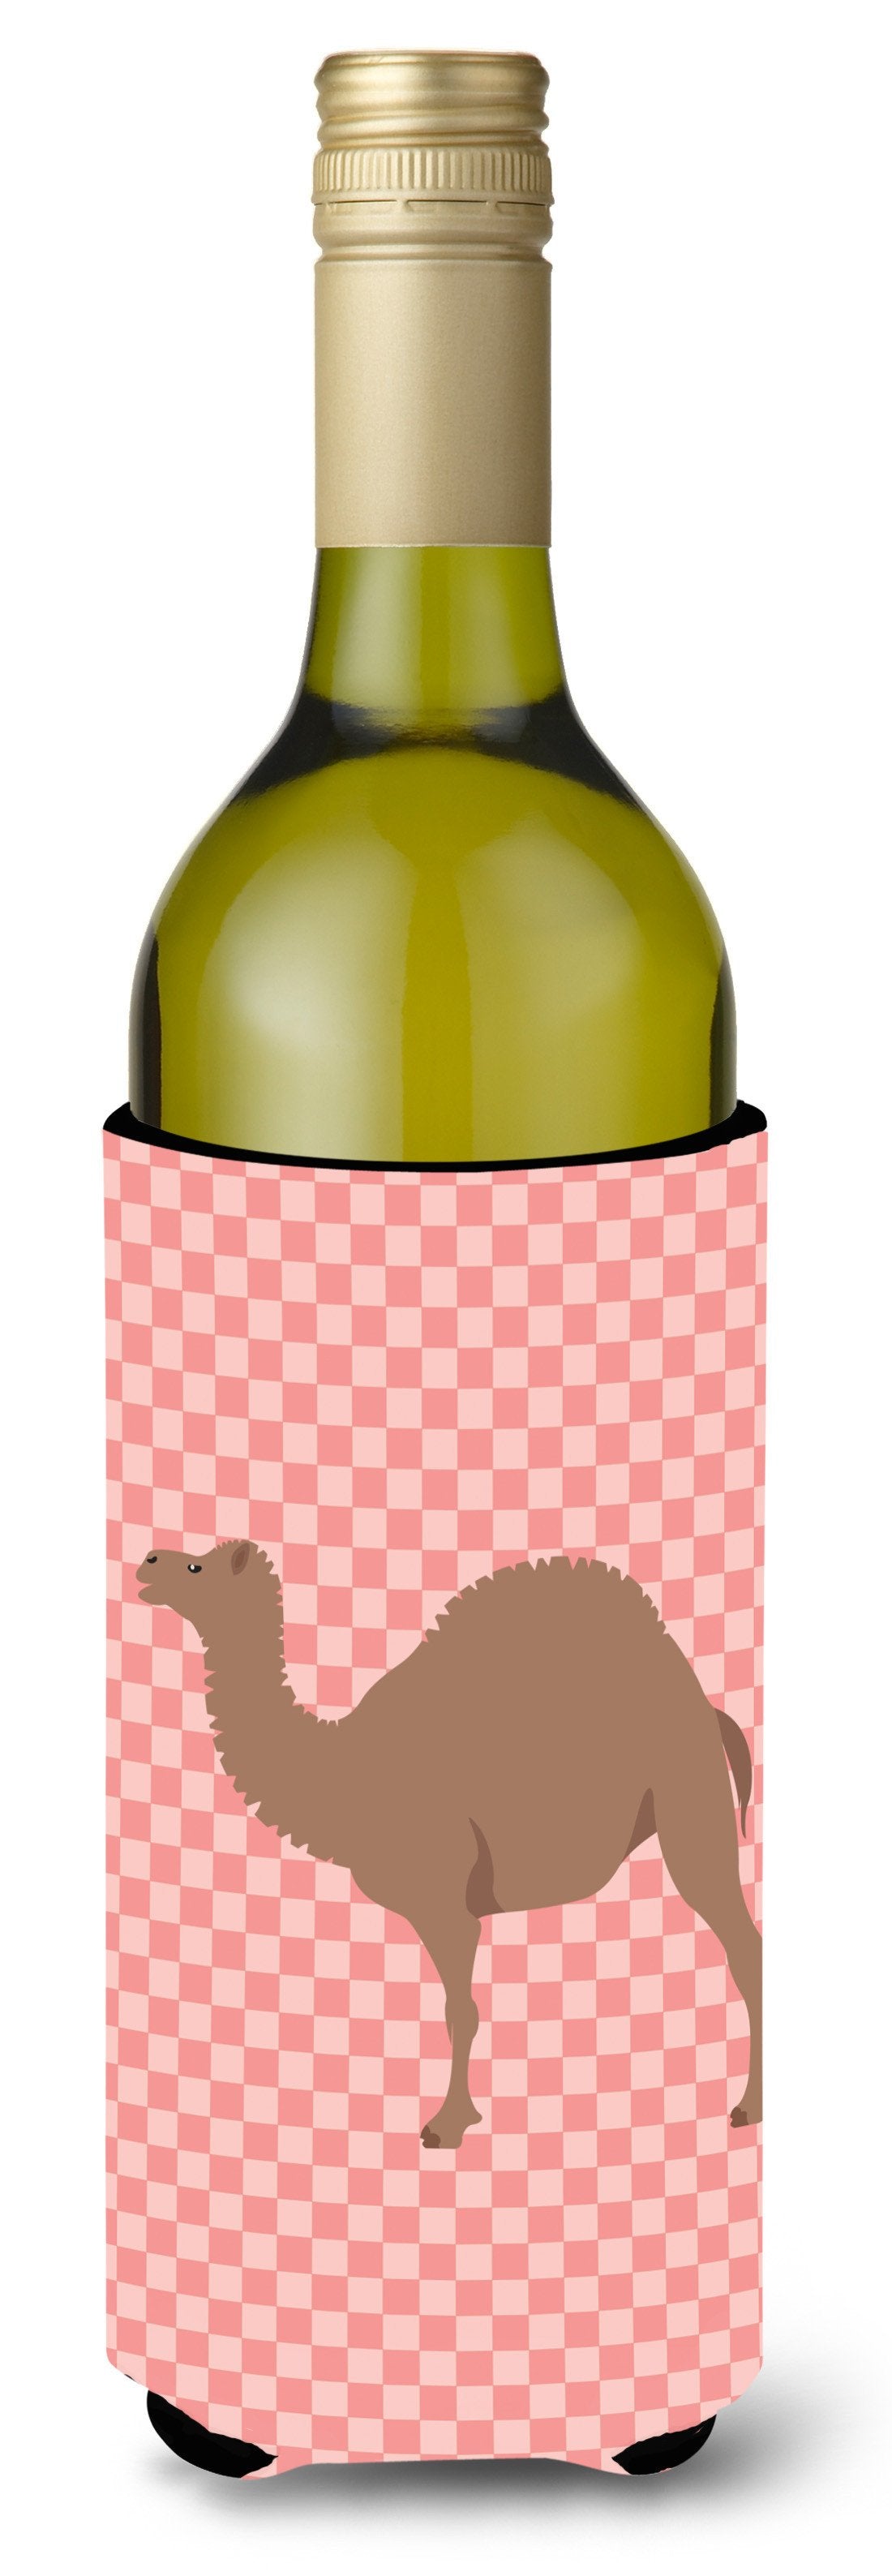 F1 Hybrid Camel Pink Check Wine Bottle Beverge Insulator Hugger BB7819LITERK by Caroline's Treasures